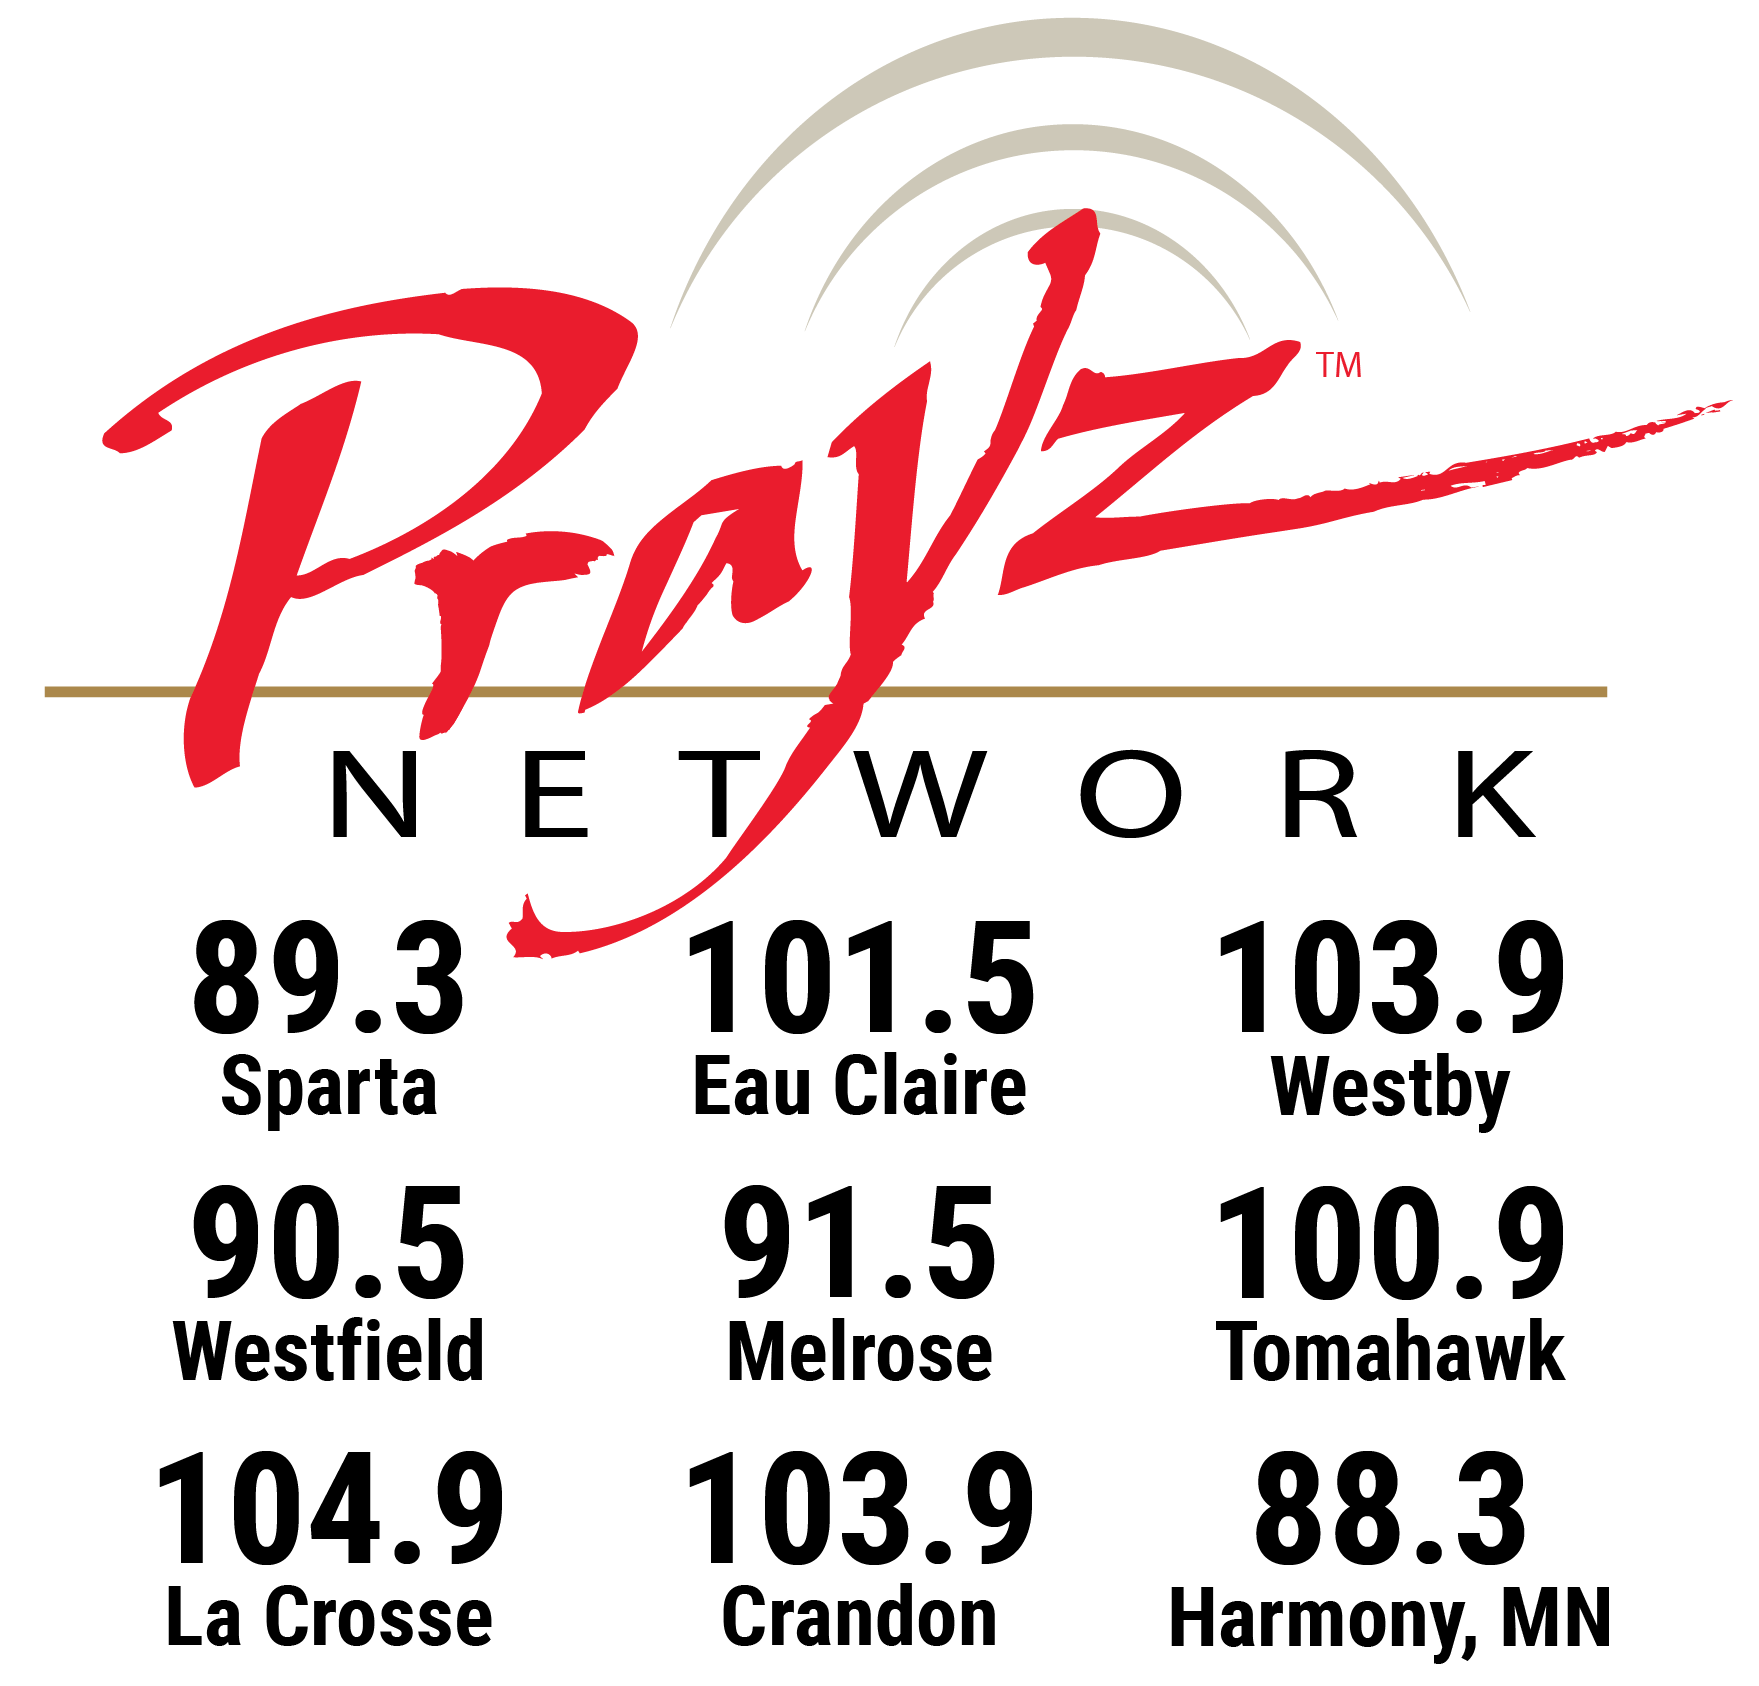 Prayz Network